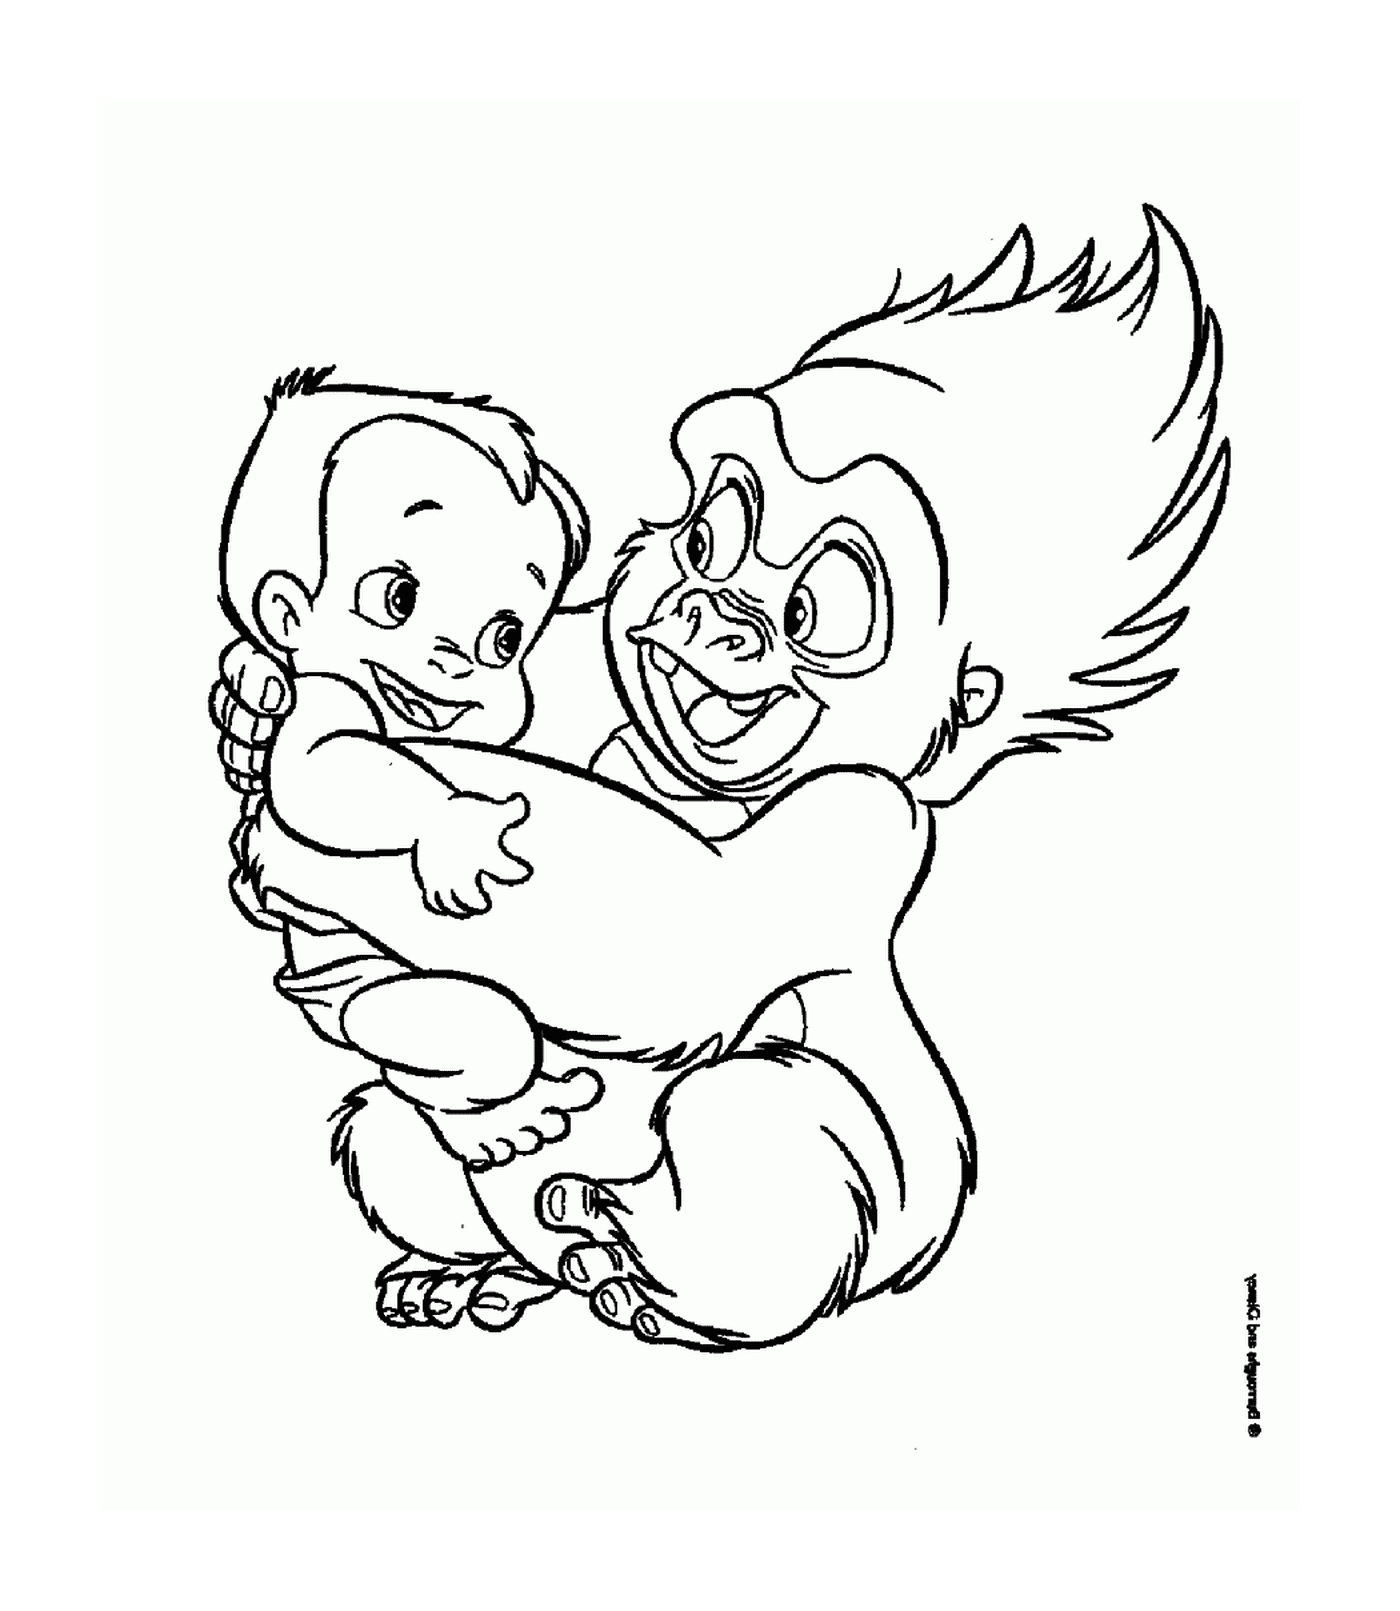  Gorilas adultas e bebês se abraçam 